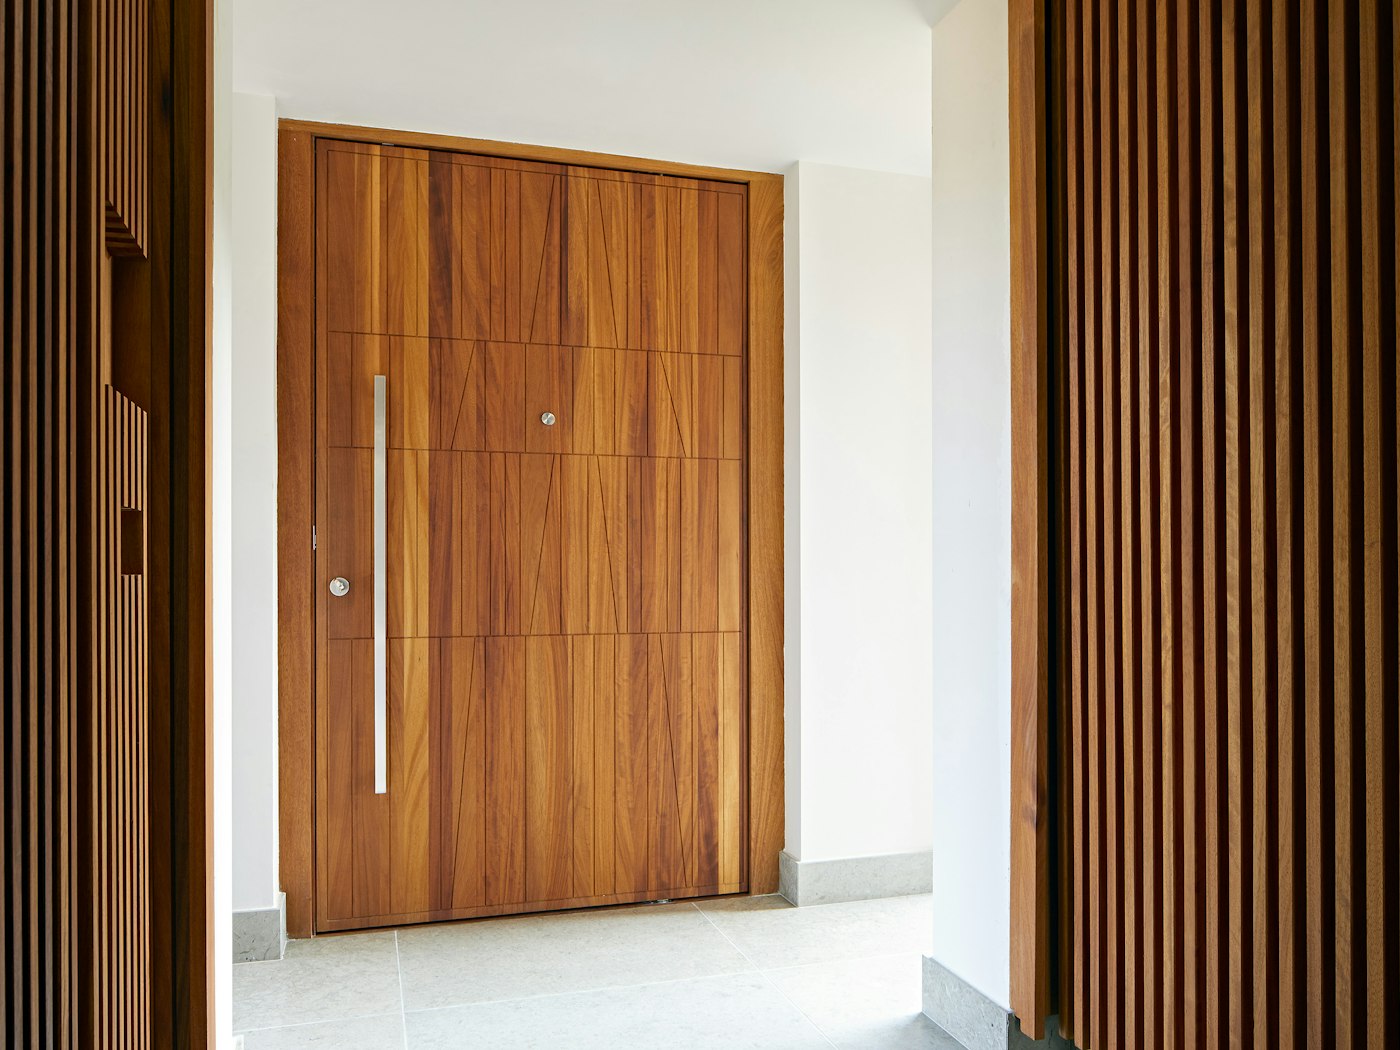 The unique door design adds geometric shape to the oversized door